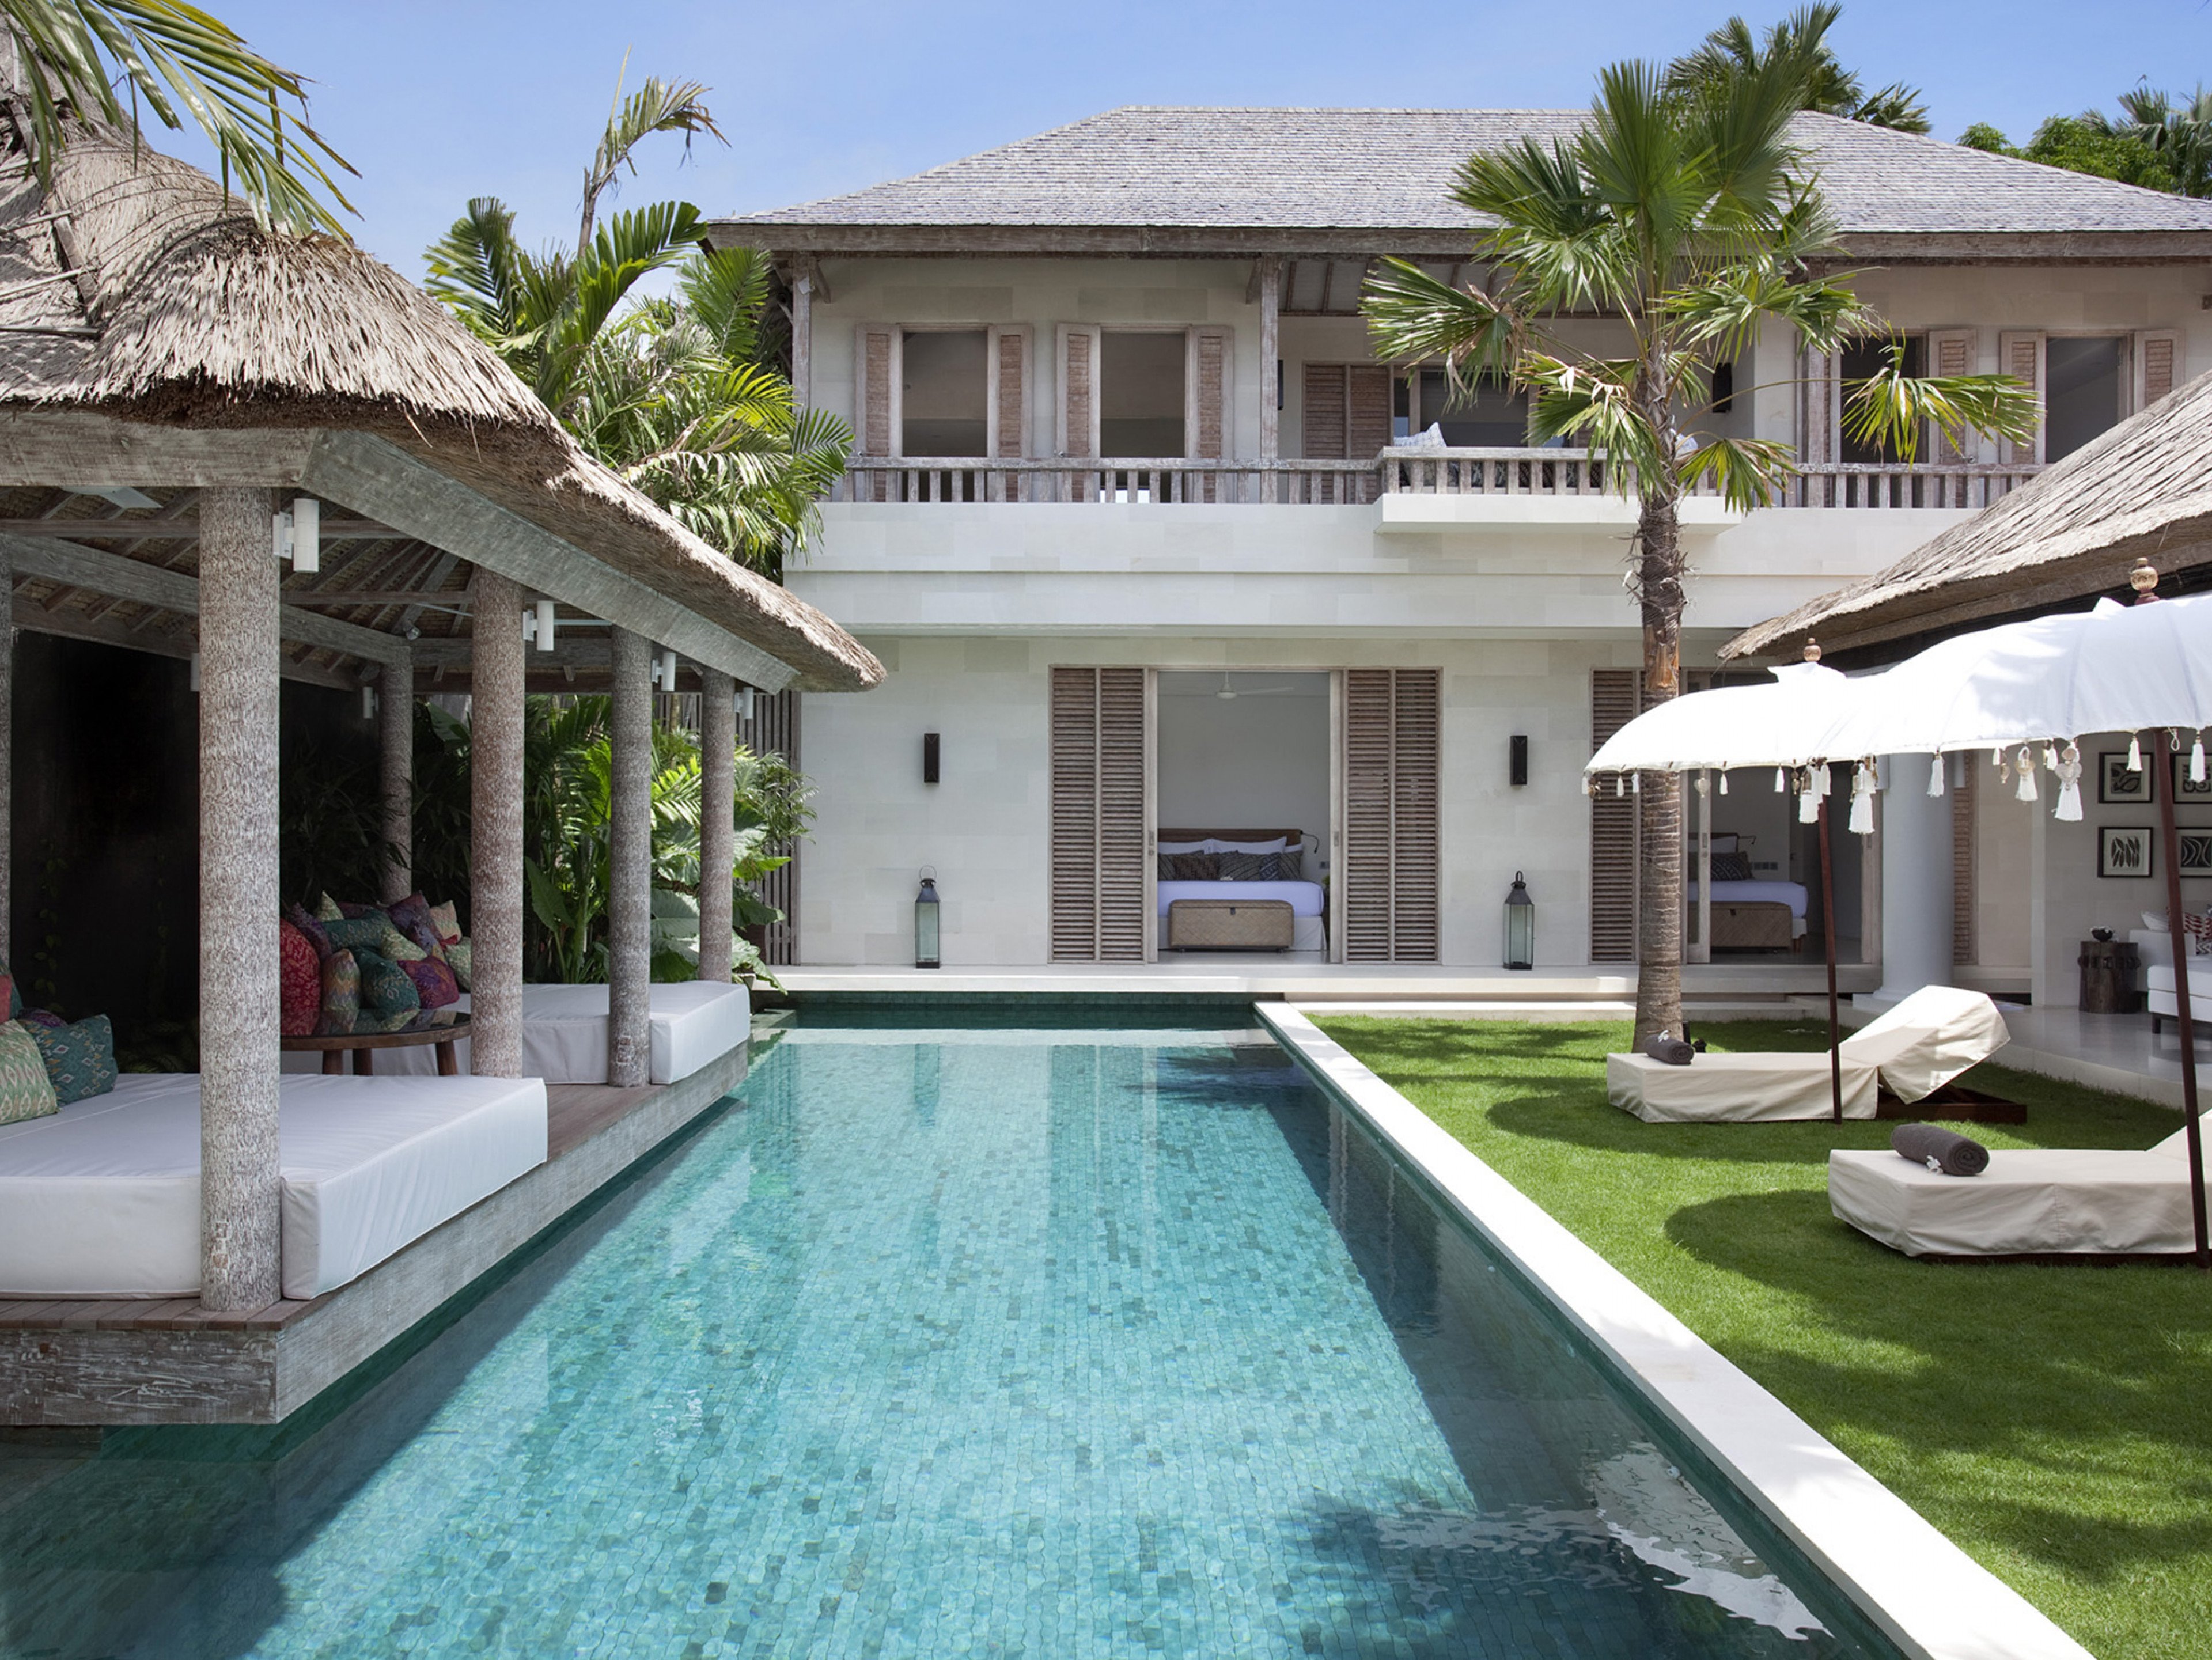 Seminyak 3601 - Villa Adasa - Villas in Seminyak, Bali with private pools